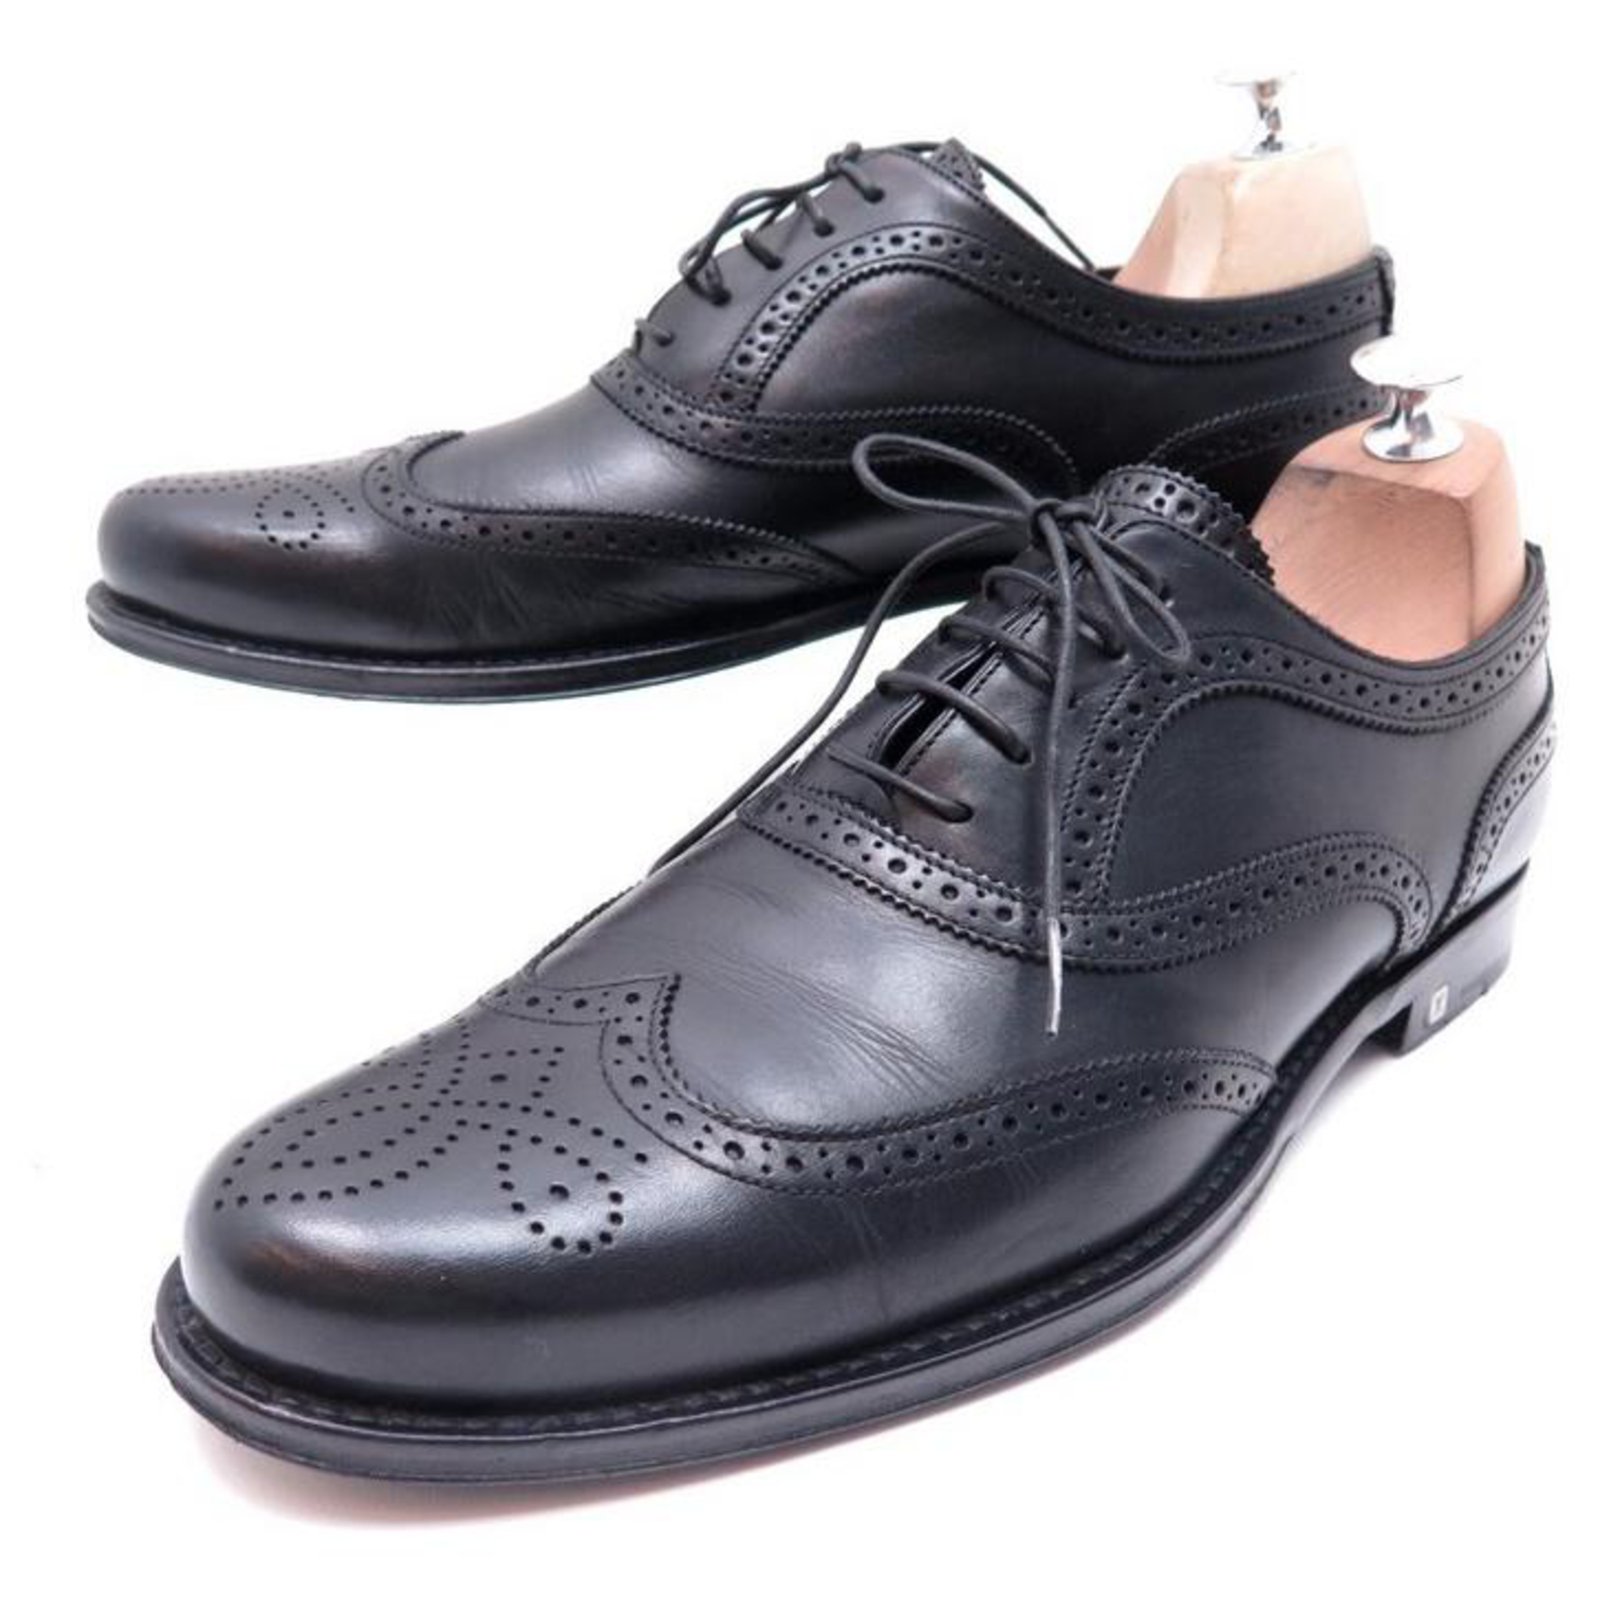 Louis Vuitton, Shoes, Louis Vuitton Black Patent Leather Shoes